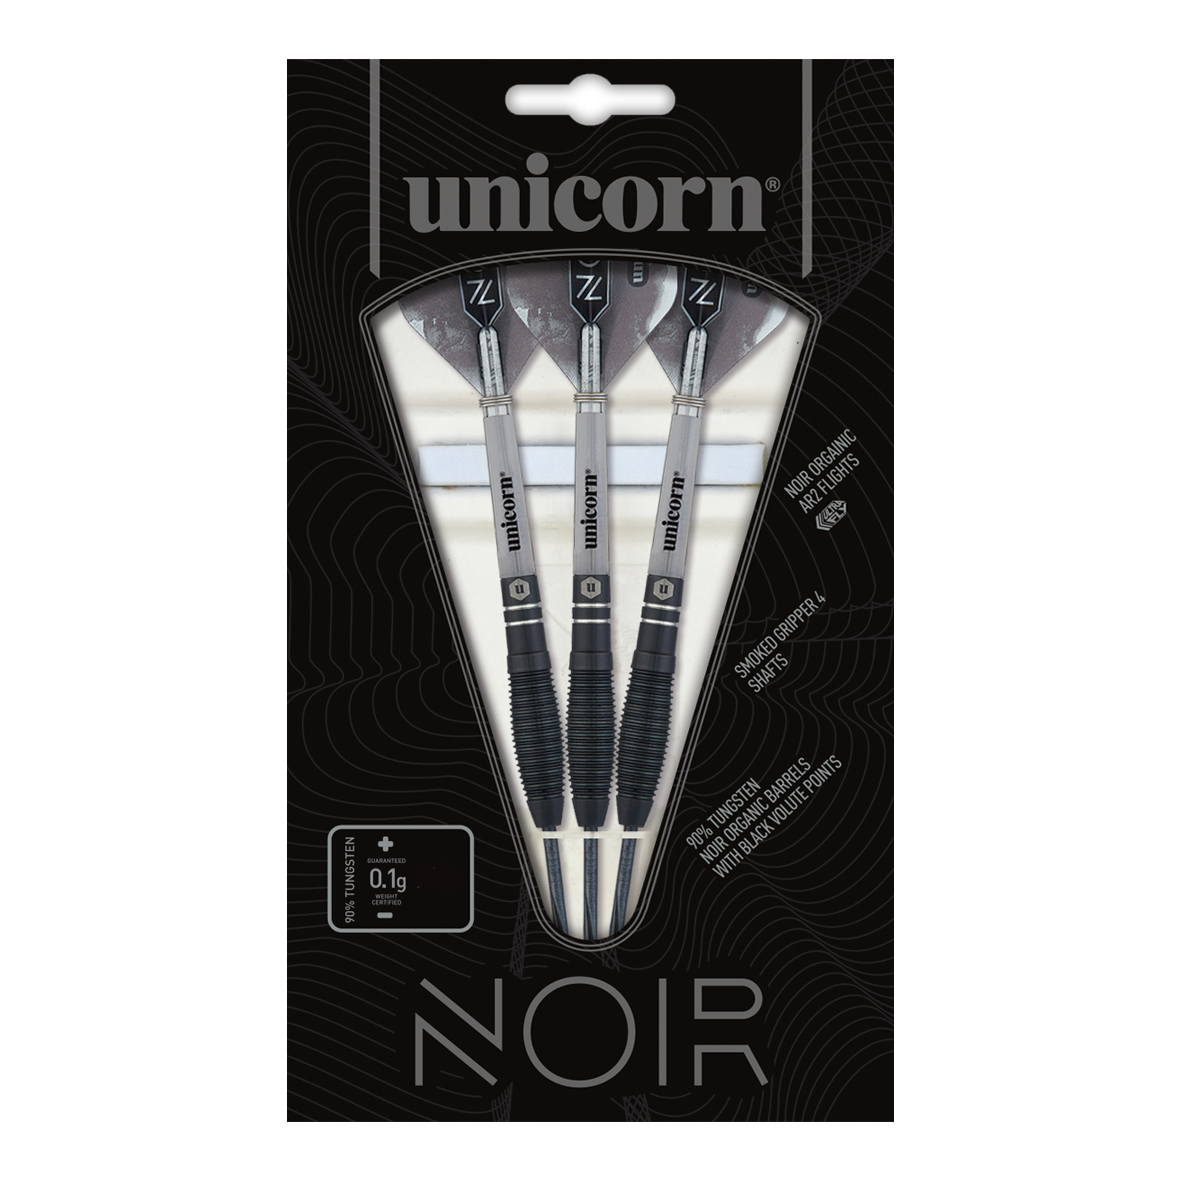 Unicorn Noir Style 1 steel darts